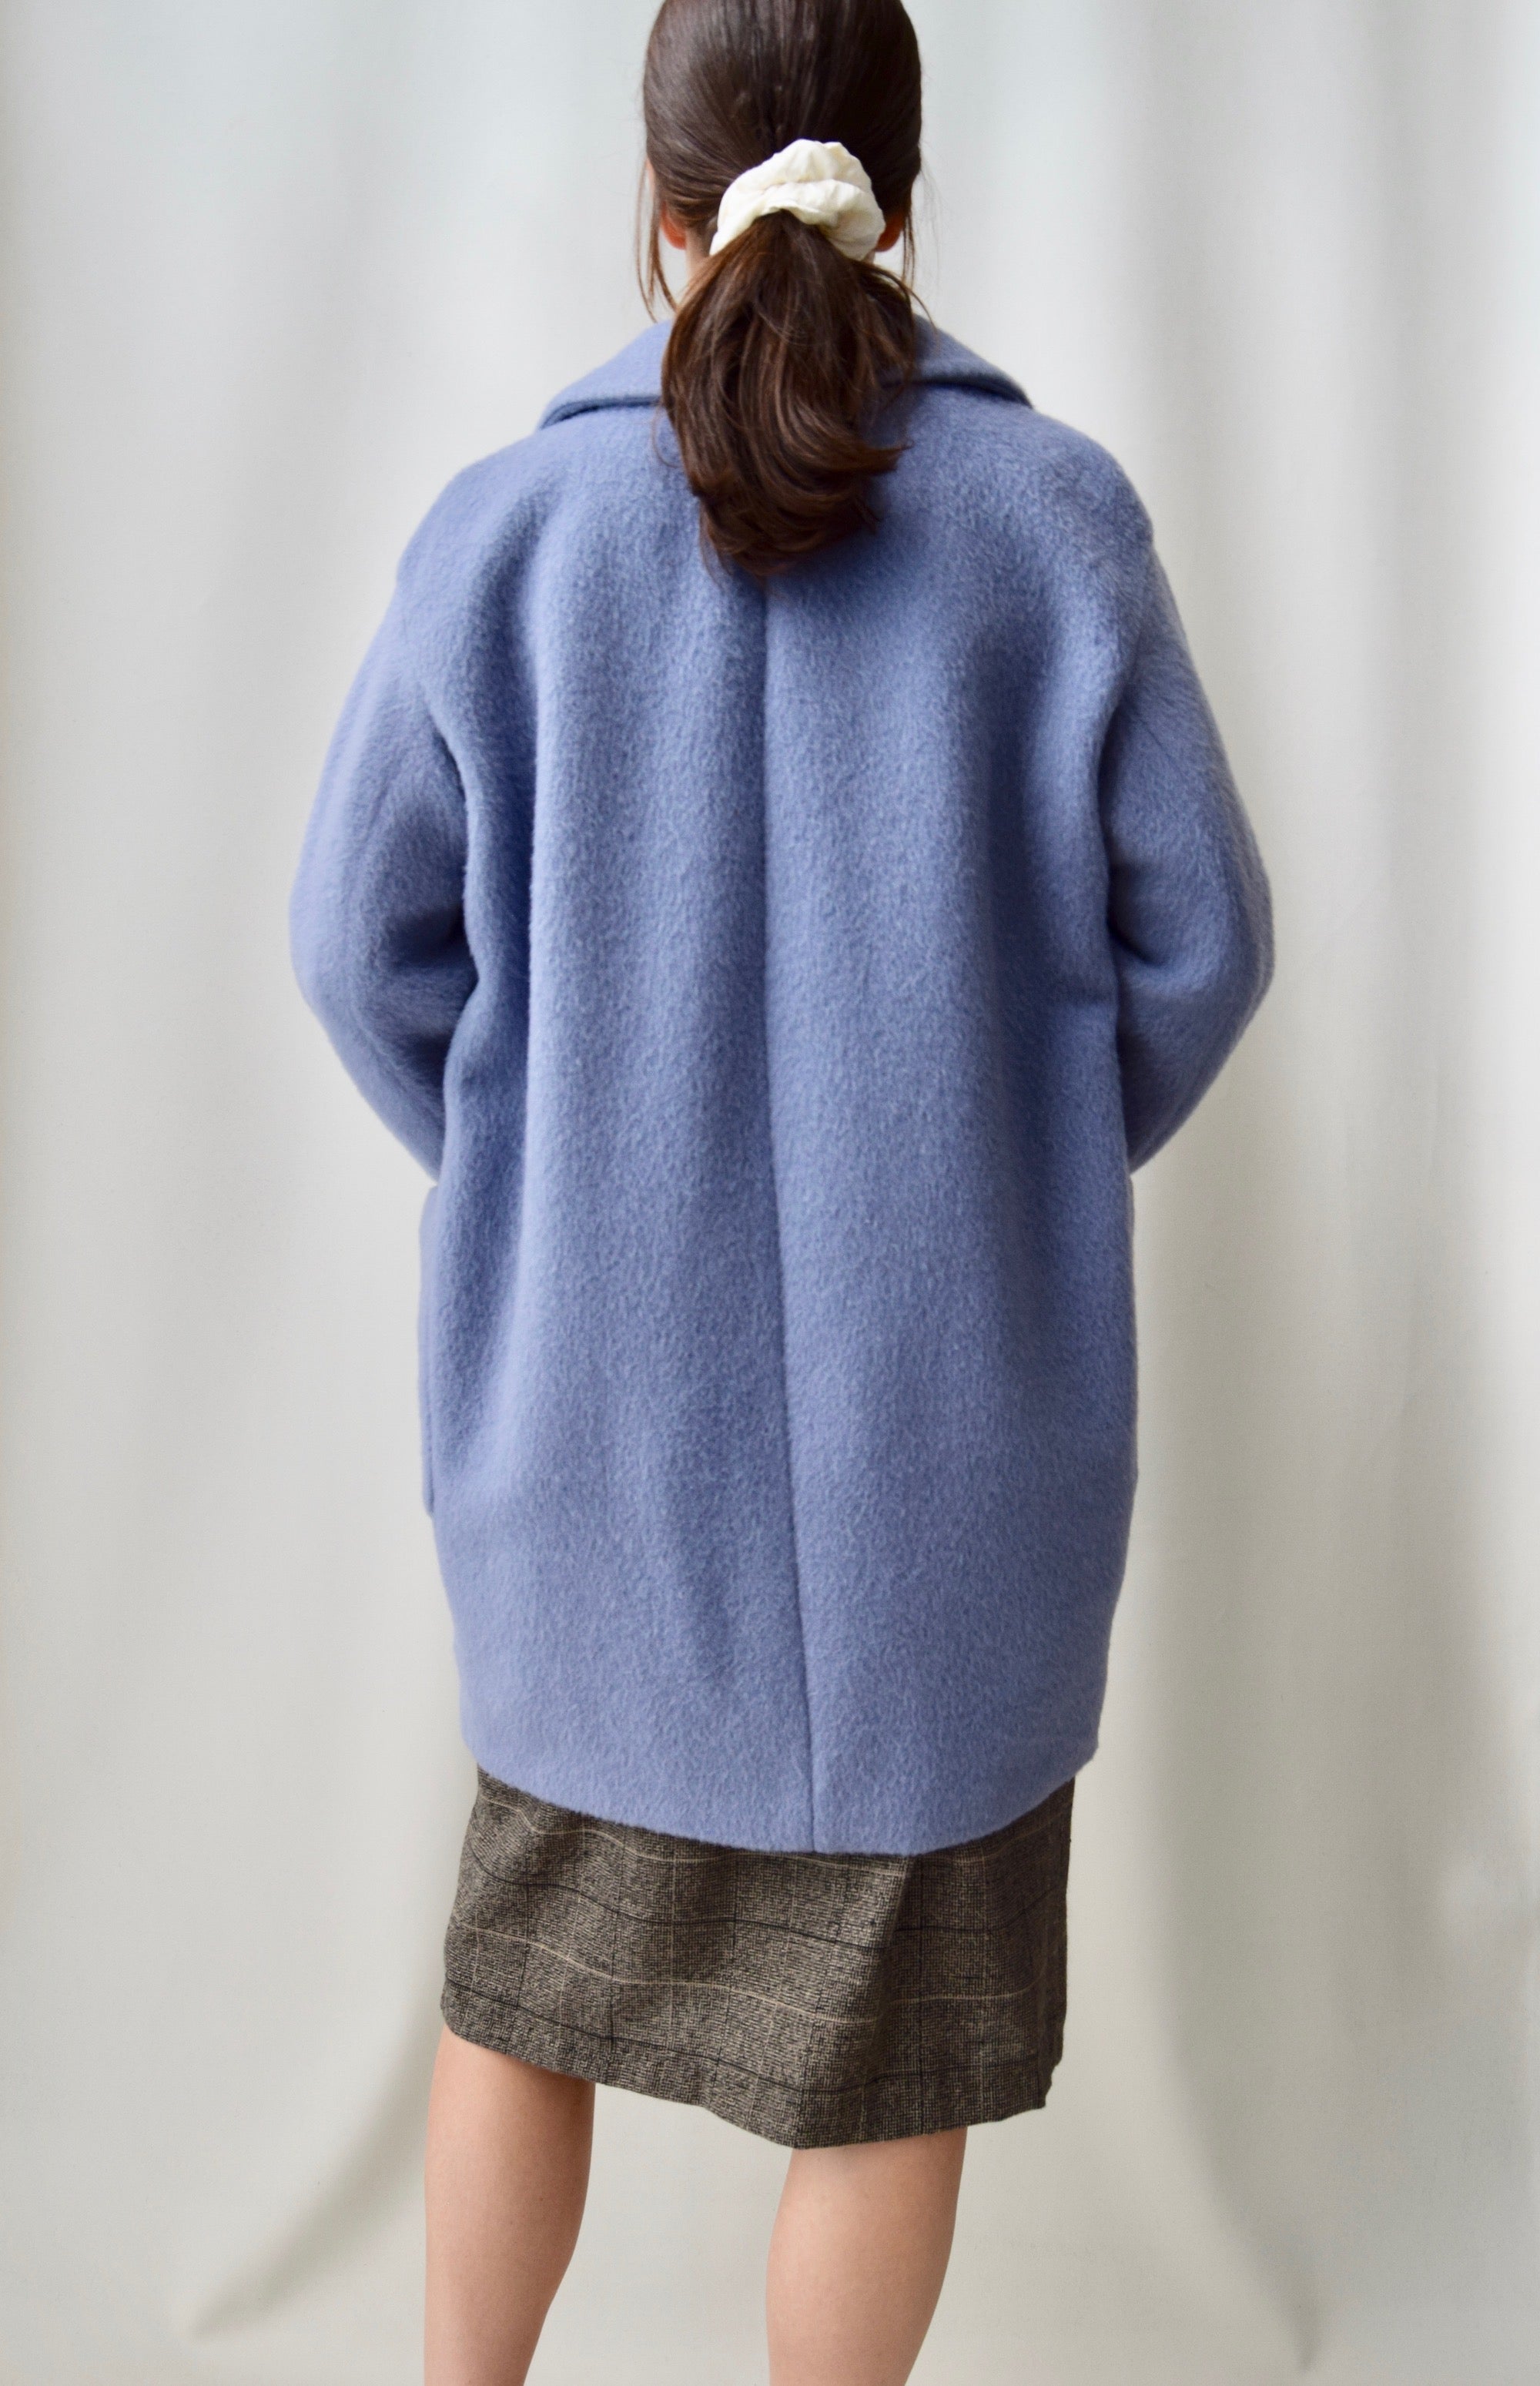 Periwinkle "Weekend Max Mara" Wool Coat